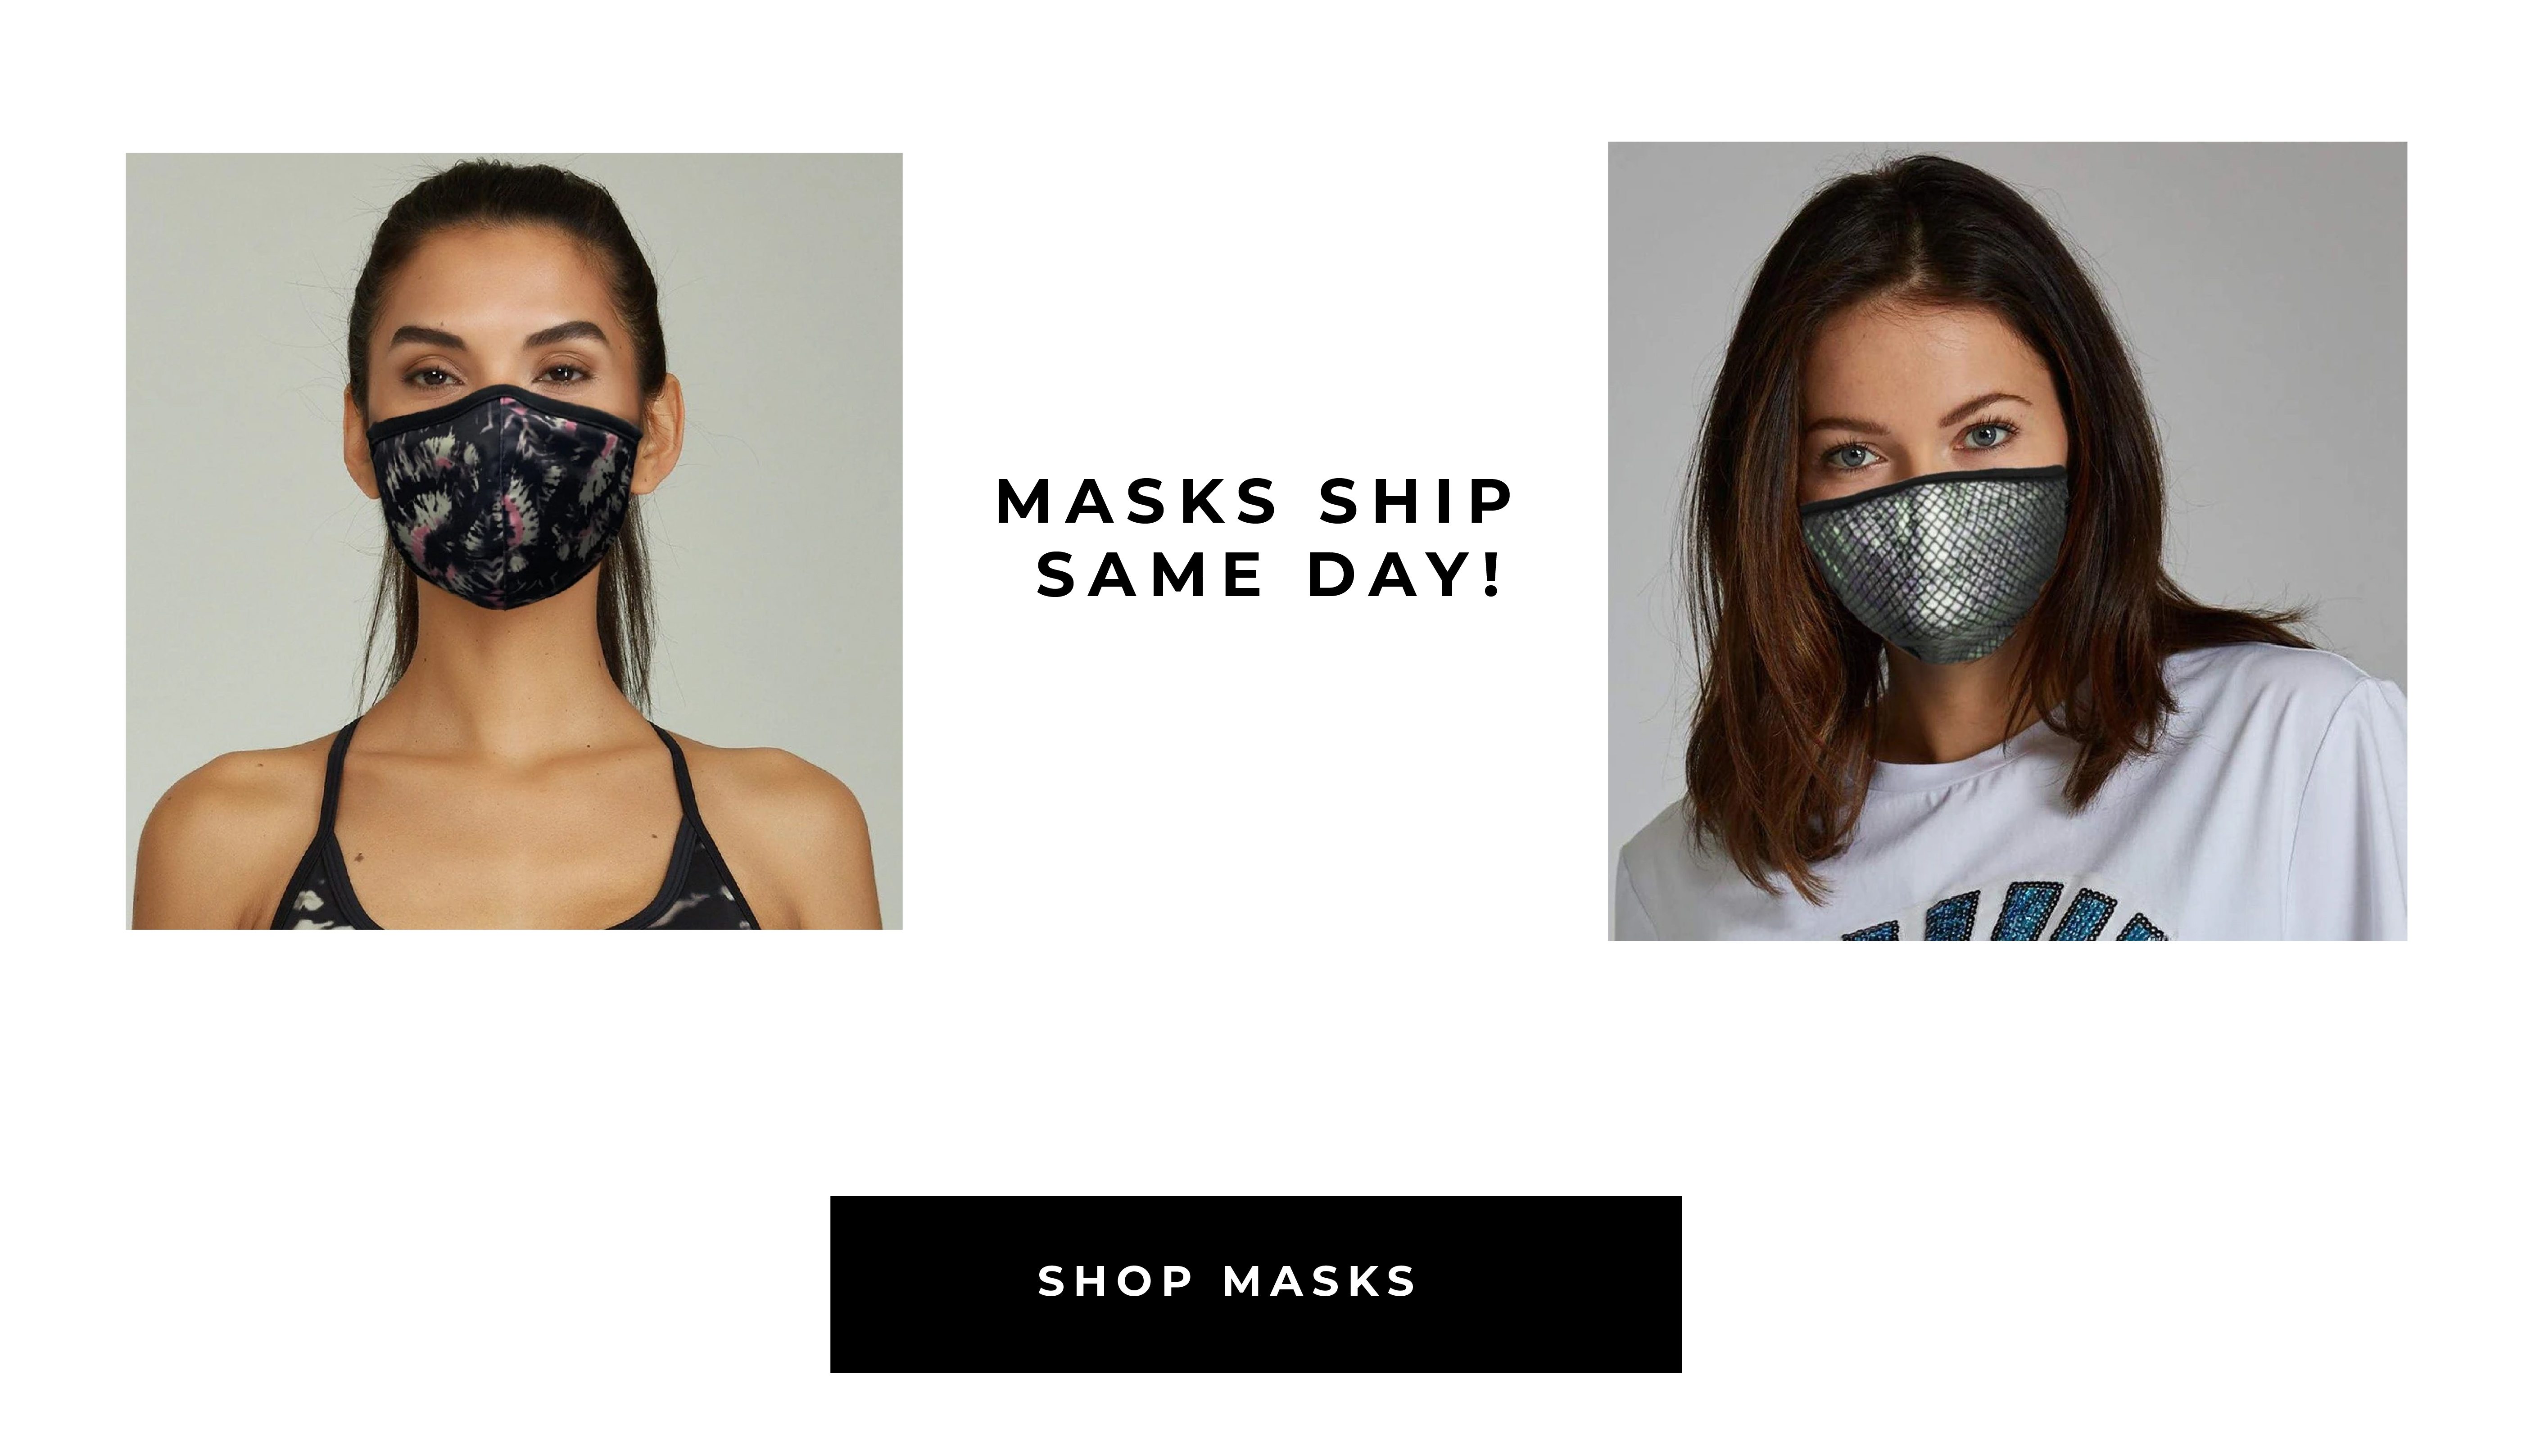 Masks ship same day!